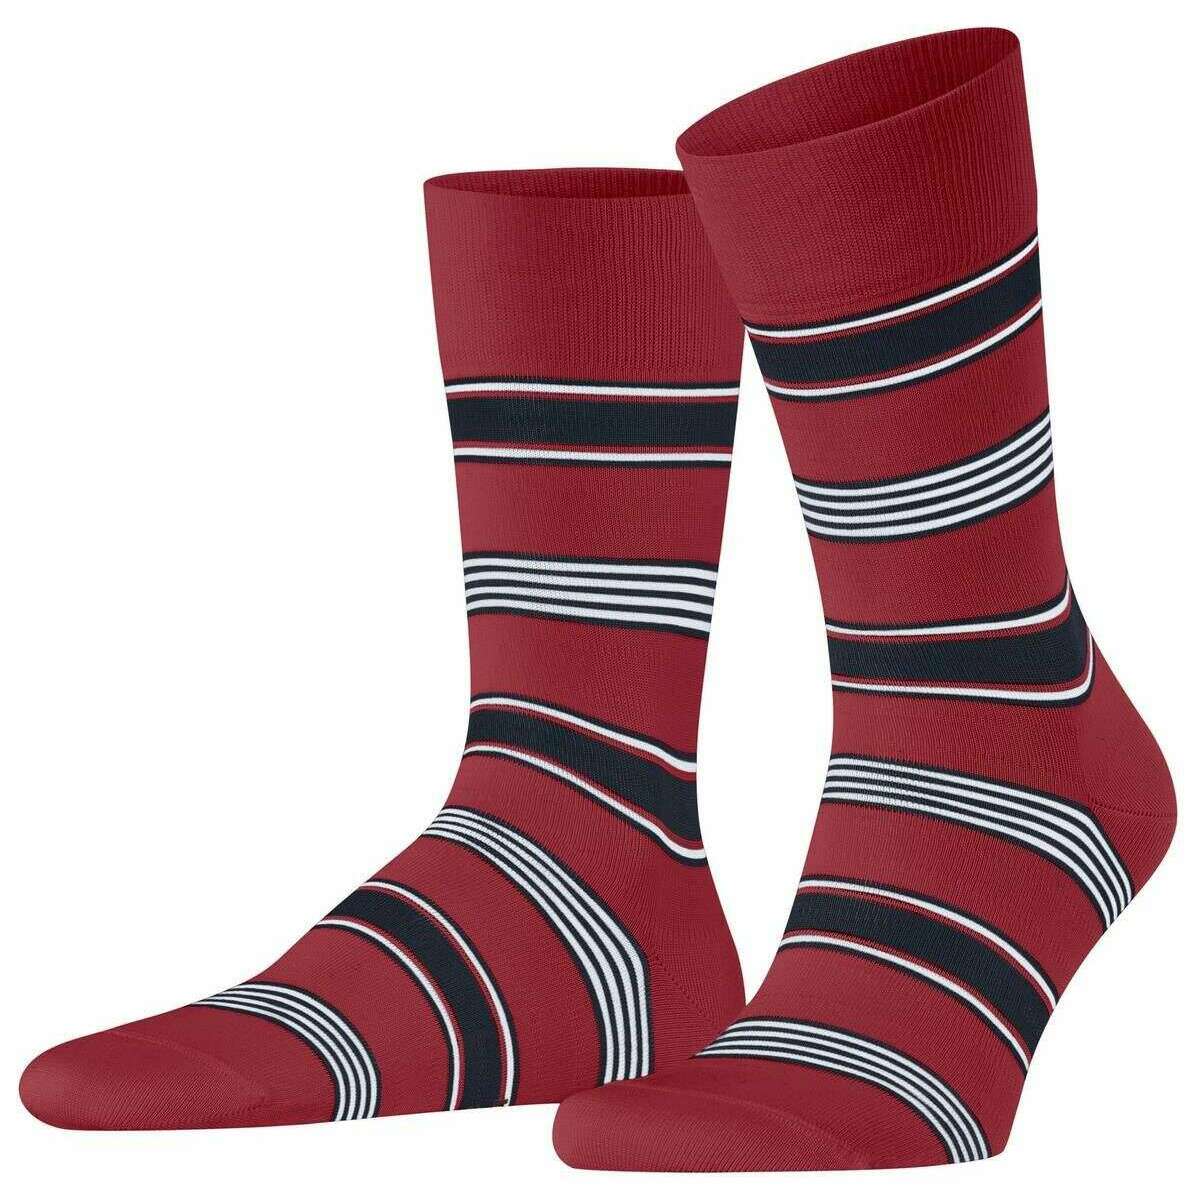 Falke Marina Stripe Socks - Scarlet Red